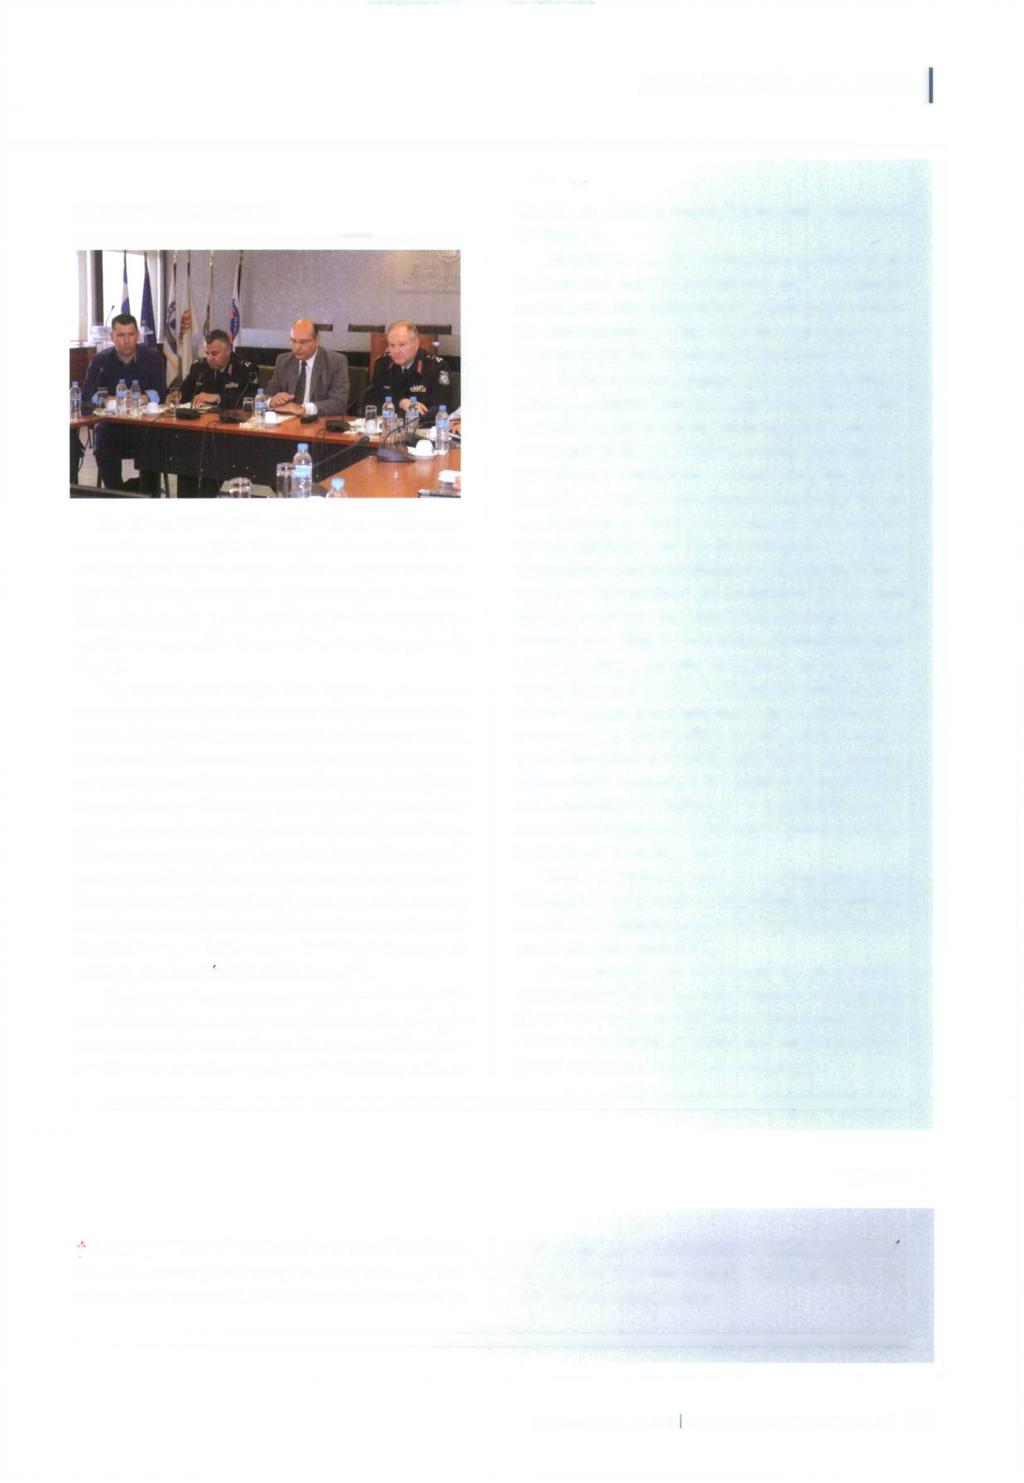 ΣΥΝΔΙΚΑΛΙΣΤΙΚΑ ΝΕΑ ΕΝΗΜΕΡΩΤΙΚΟ ΔΕΛΤΙΟ Την 18" και 19η Απριλίου 2016 η Ομοσπονδία πραγματοποίησε στην Αθήνα διευρυμένο Διοικητικό - Γενικό Συμβούλιο με τη συμμετοχή και εκπροσώπων των πρωτοβάθμιων